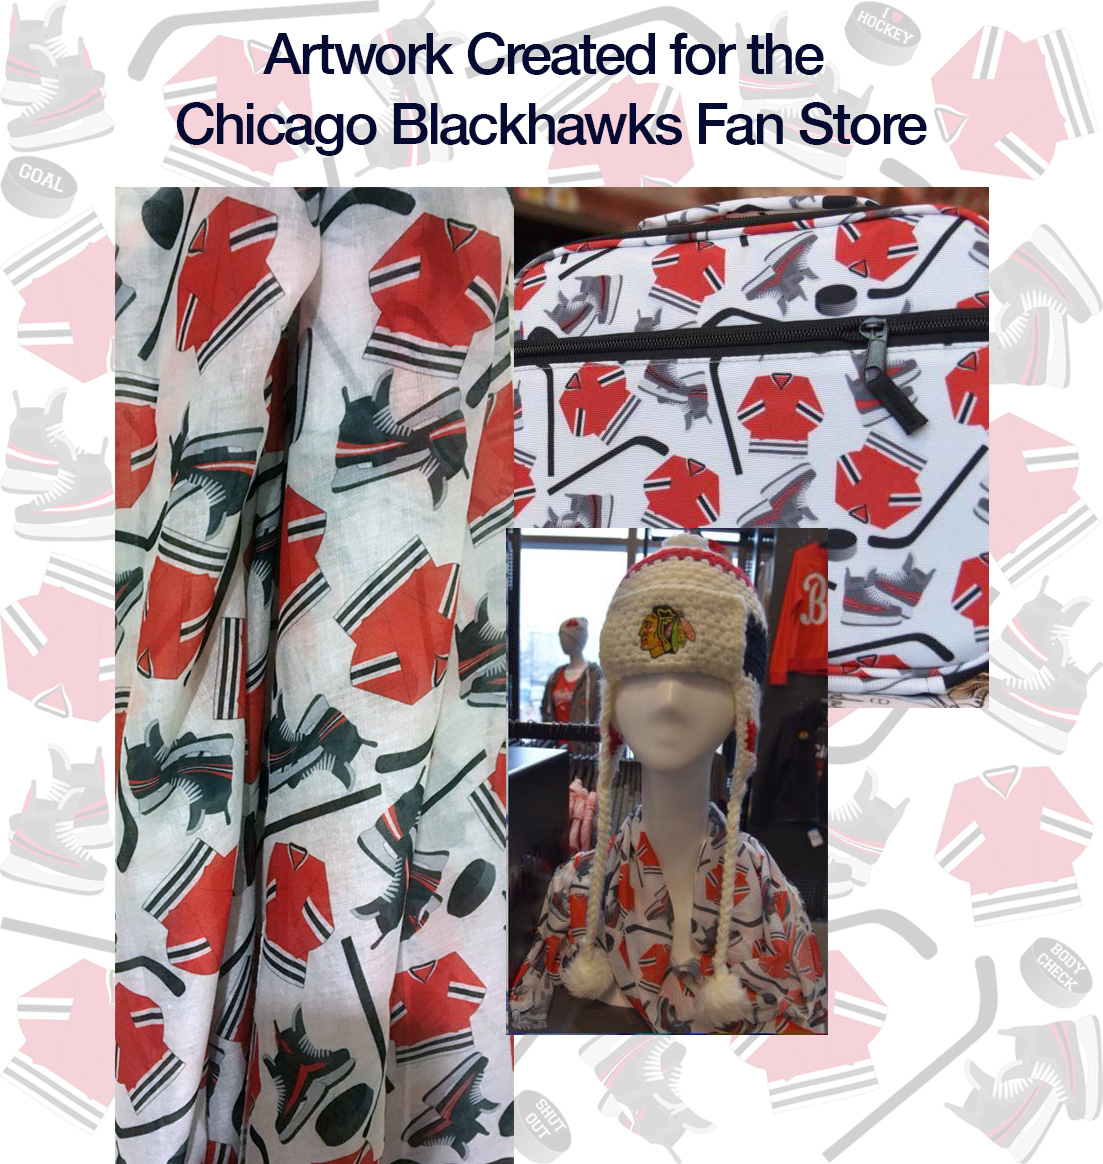 Chicago Blackhawks Artwork